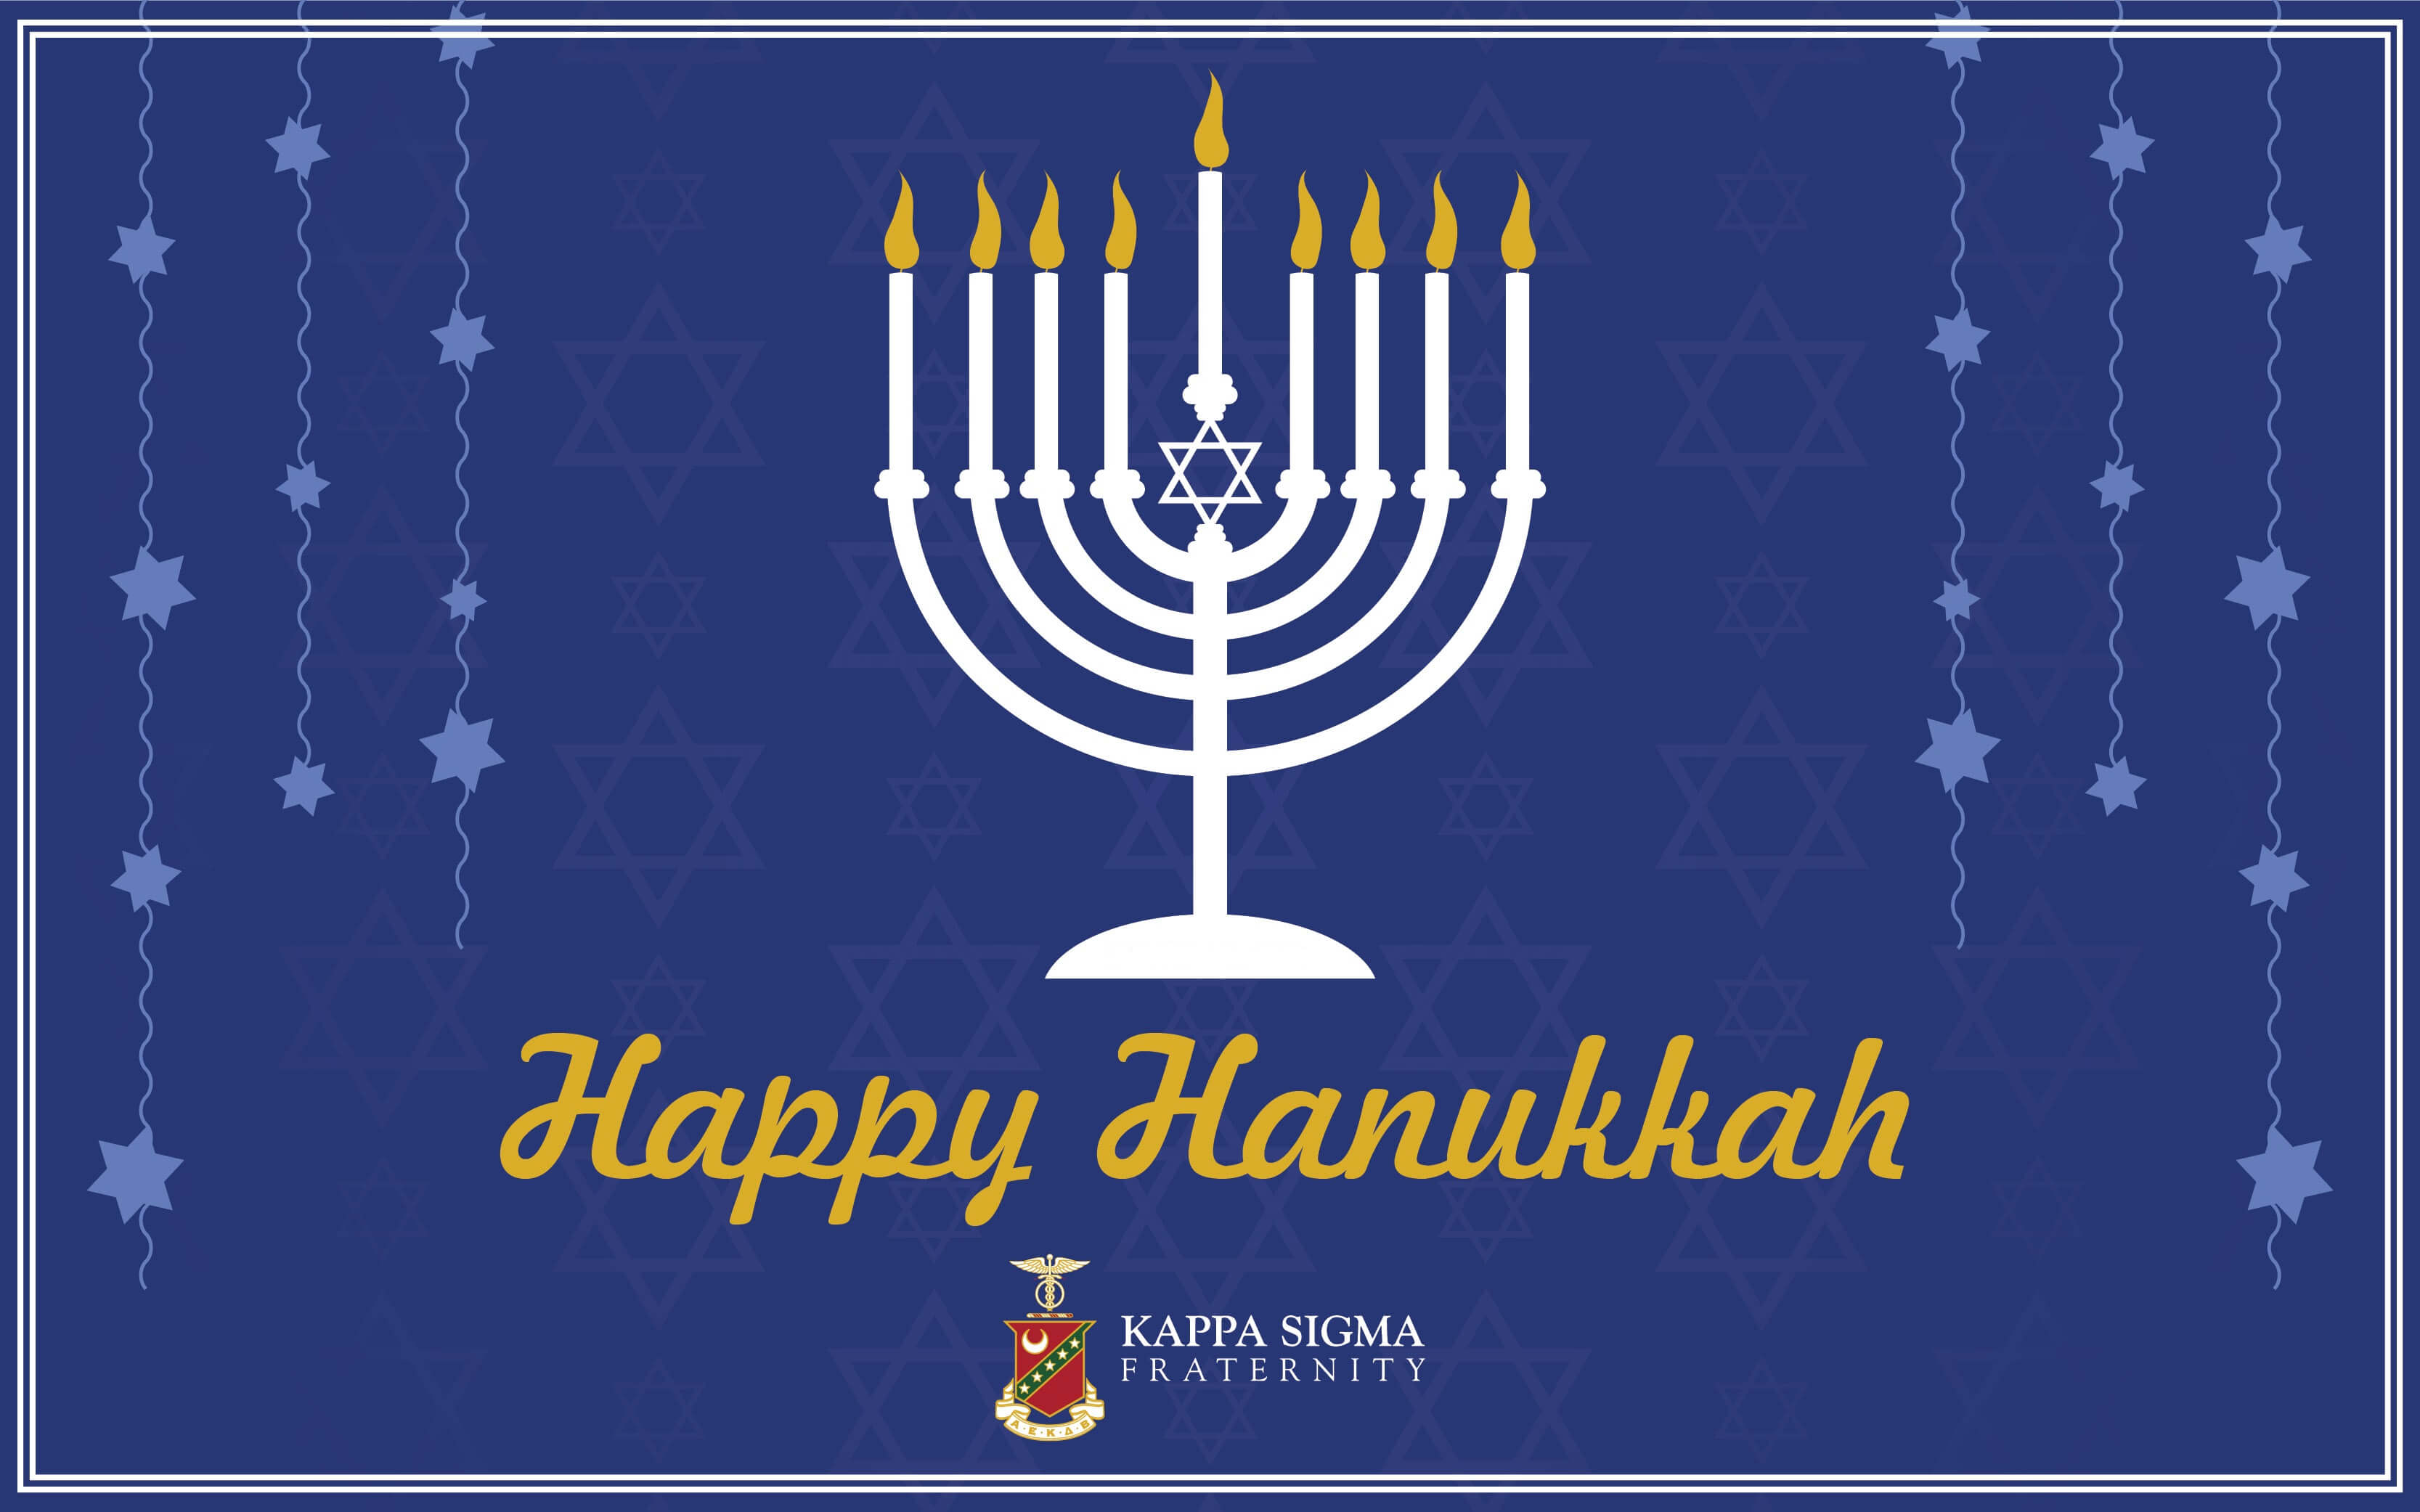 Happy Hanukkah! - Kappa Sigma Fraternity